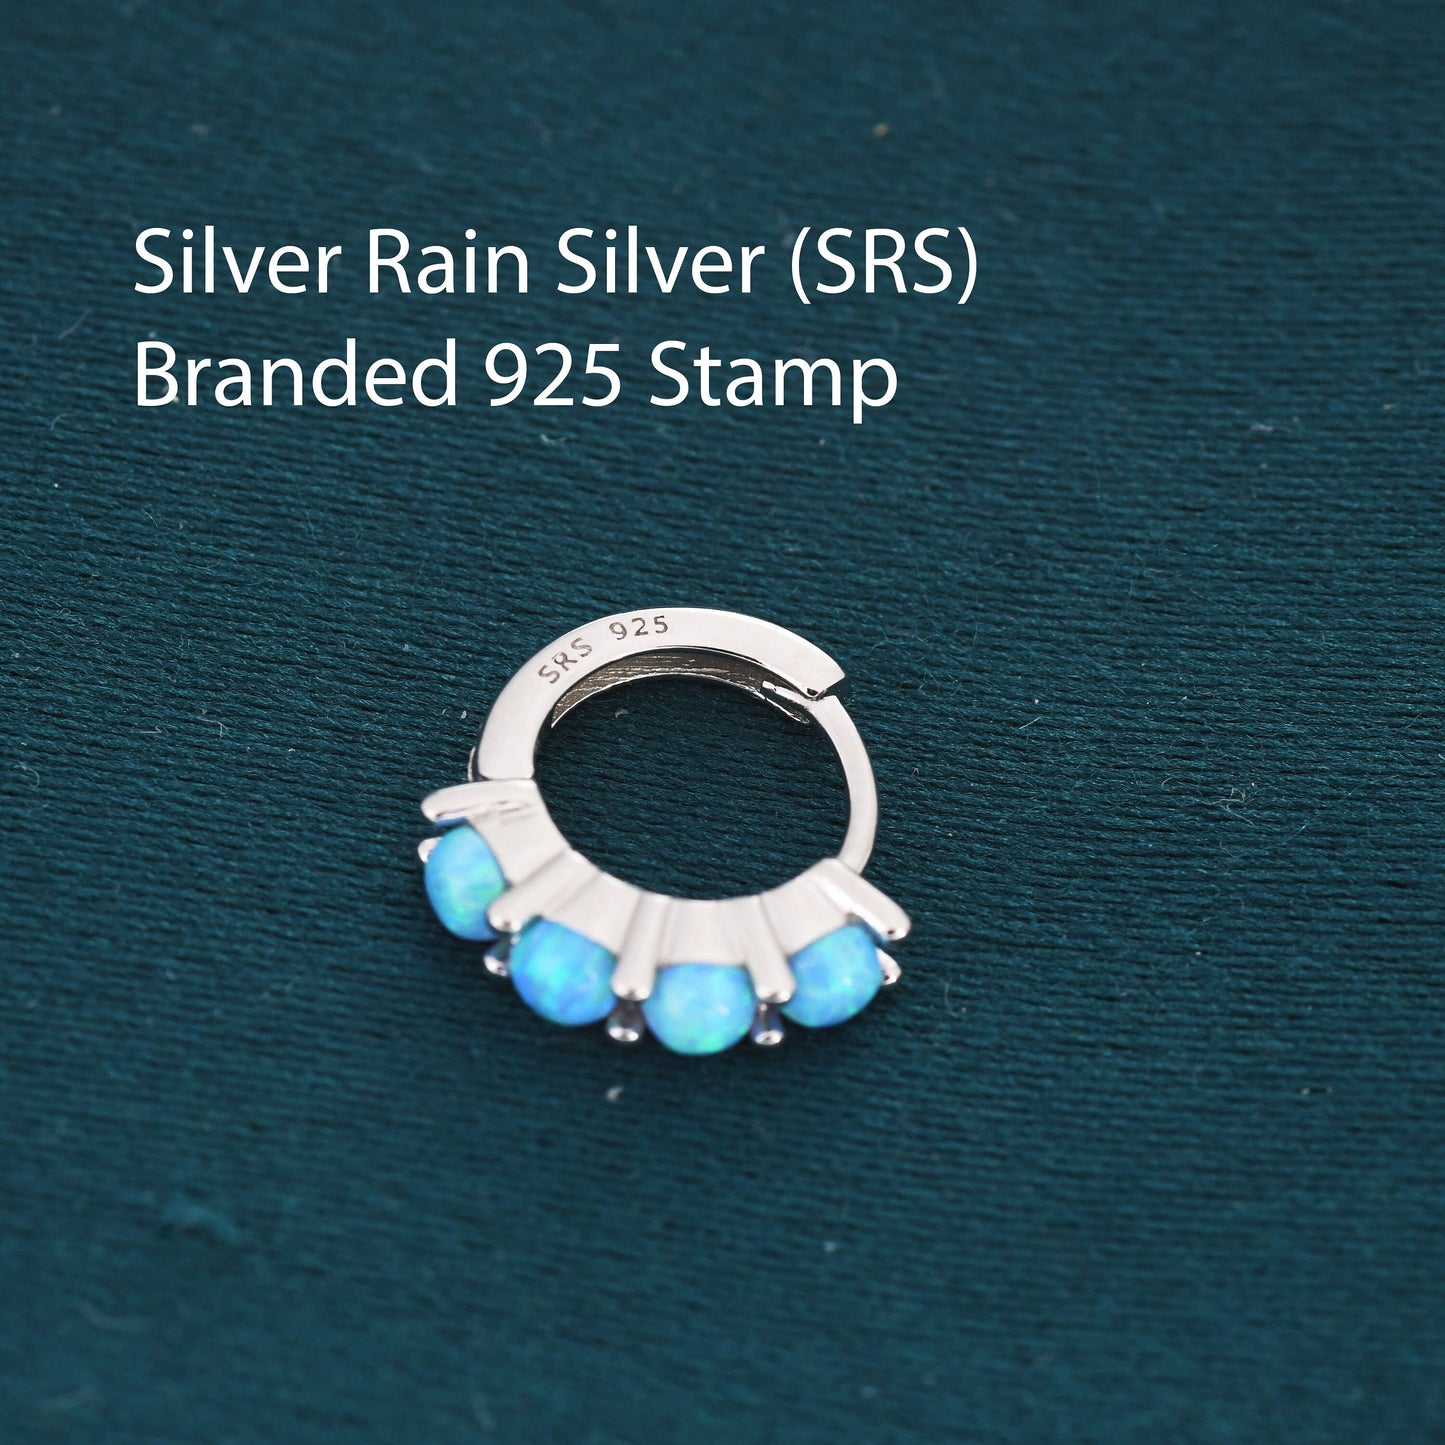 Blue Opal Huggie Hoops in Sterling Silver, 8mm Opal Hoops, Silver or Gold, Dainty Hoops Earrings, Opal Earring